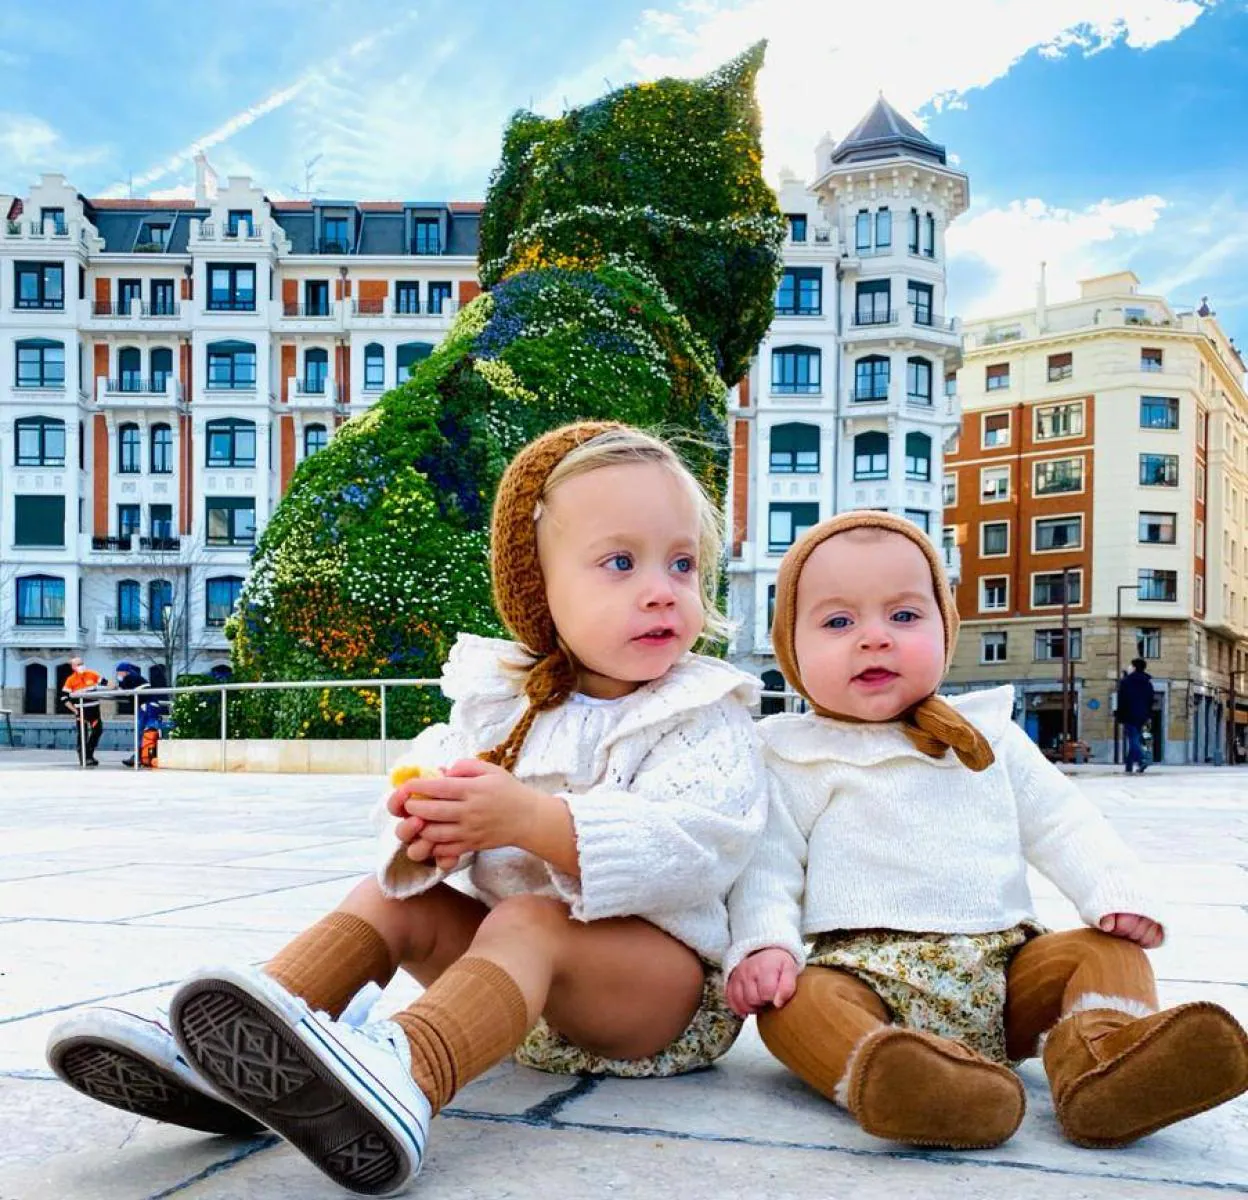 Las hermanas de Bilbao que con sus looks: Nora y Ariane, las hermanas de Bilbao de 1 y 3 años que triunfan con looks | Correo